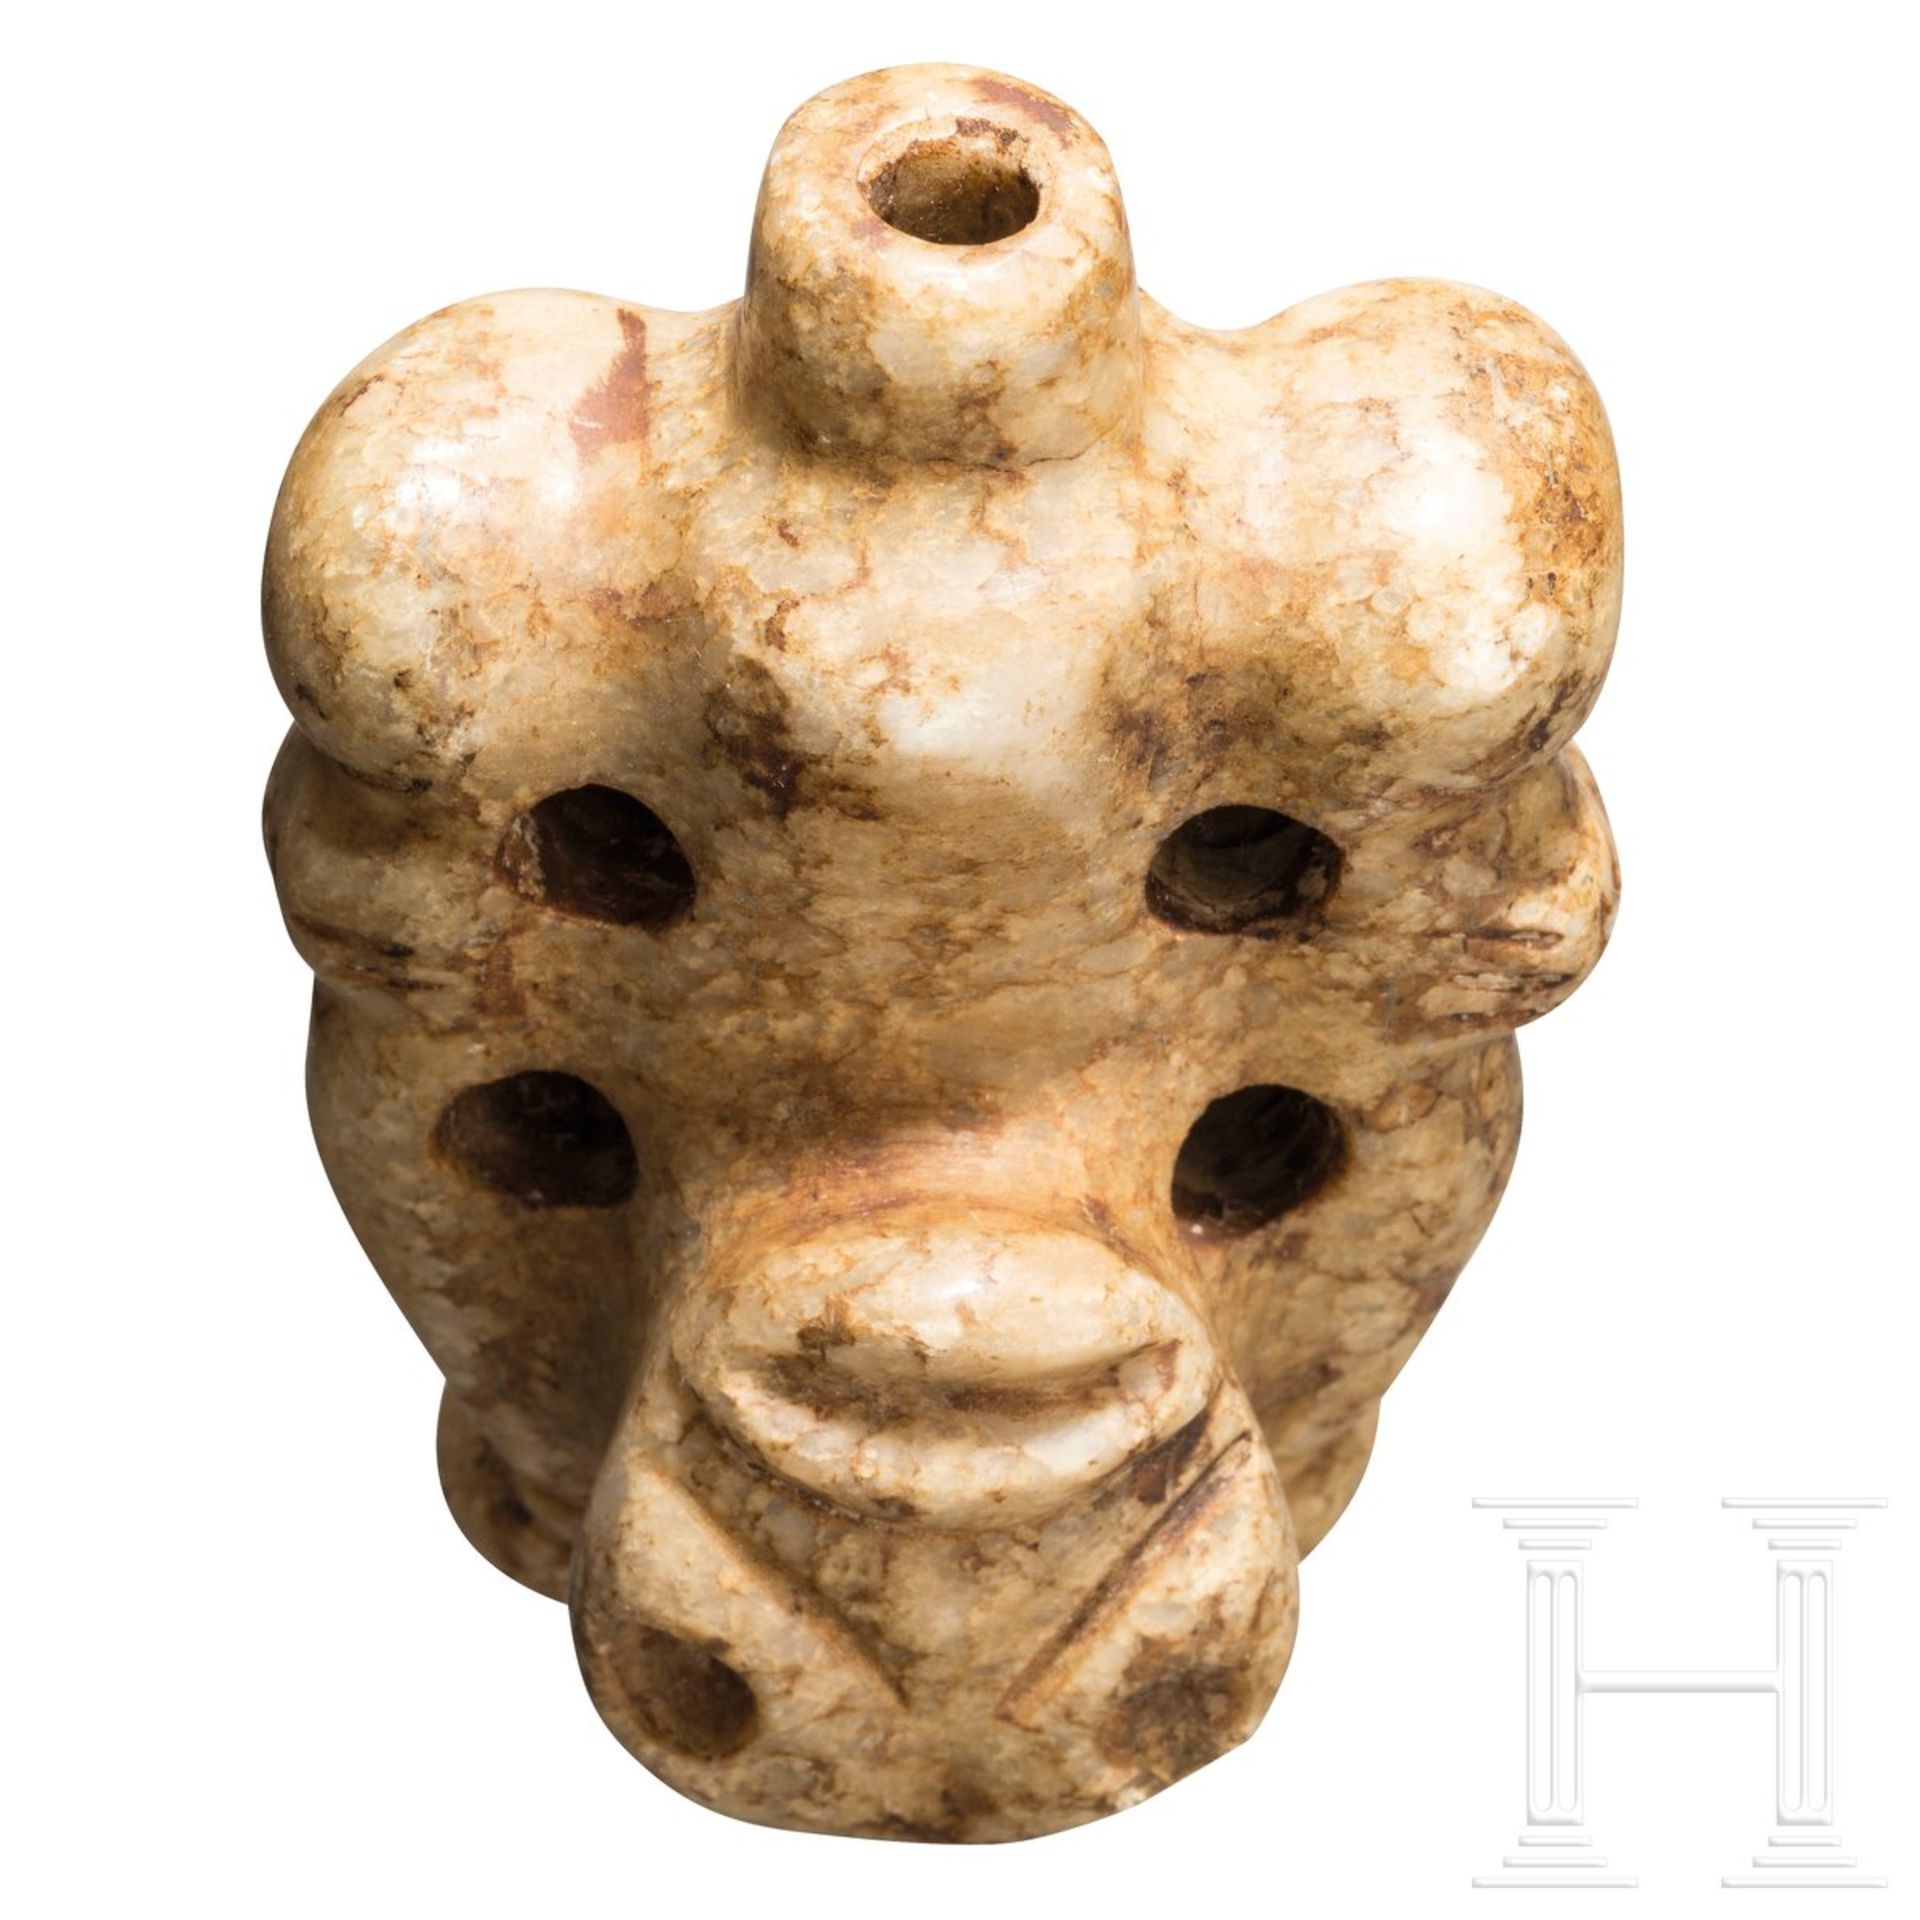 Ein Cohoba-Sauger in anthropomorpher Gestalt, Taino-Kultur, Karibik, 11. - 15. Jhdt. - Bild 3 aus 3